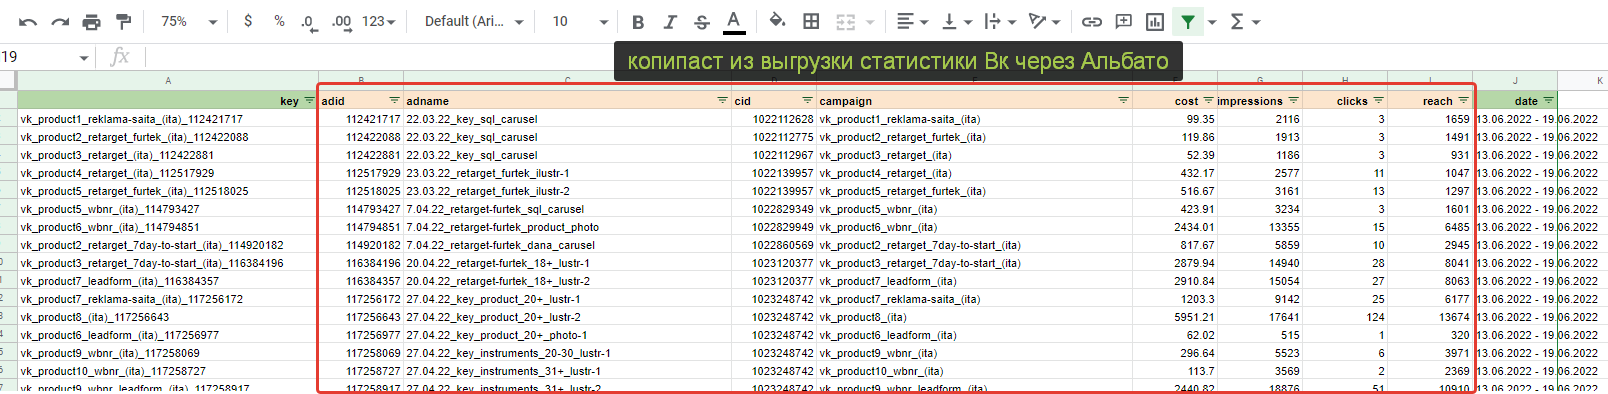 выгрузка статистики из Вконтакте с объявлениями и кампаниями в одном наборе